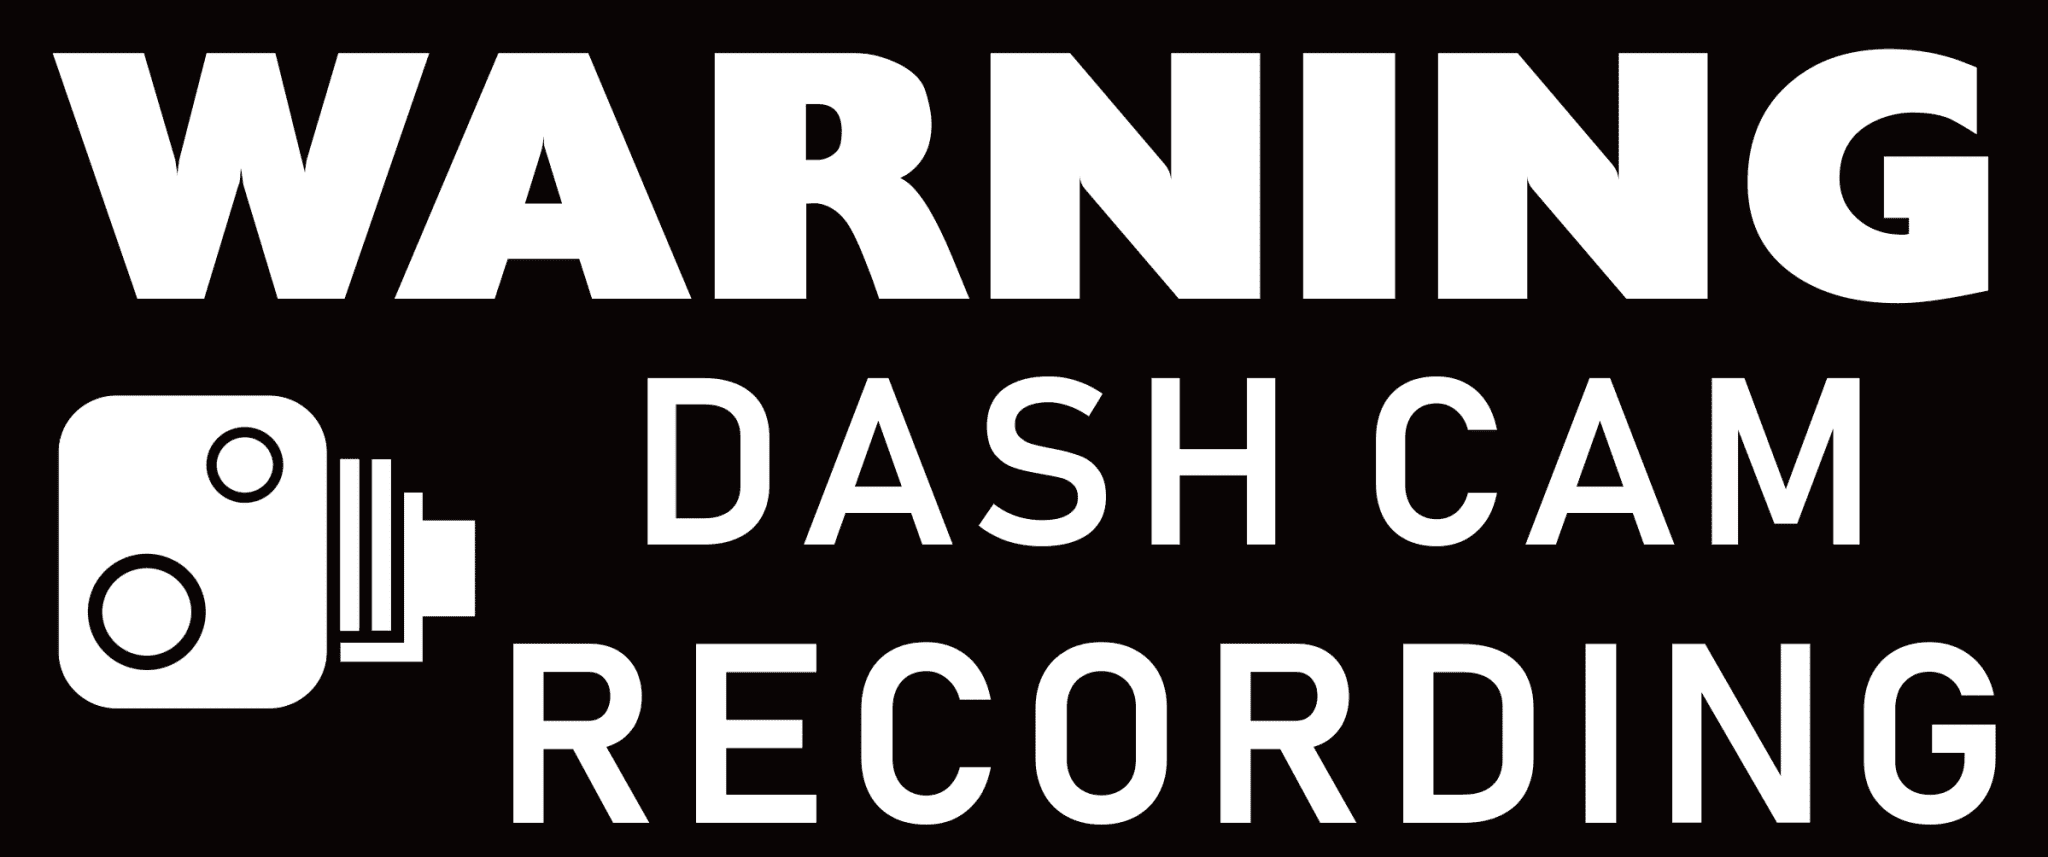 Naklejka samochodowa Dash Cam Recording biała - 203x85mm - wewnątrz okna